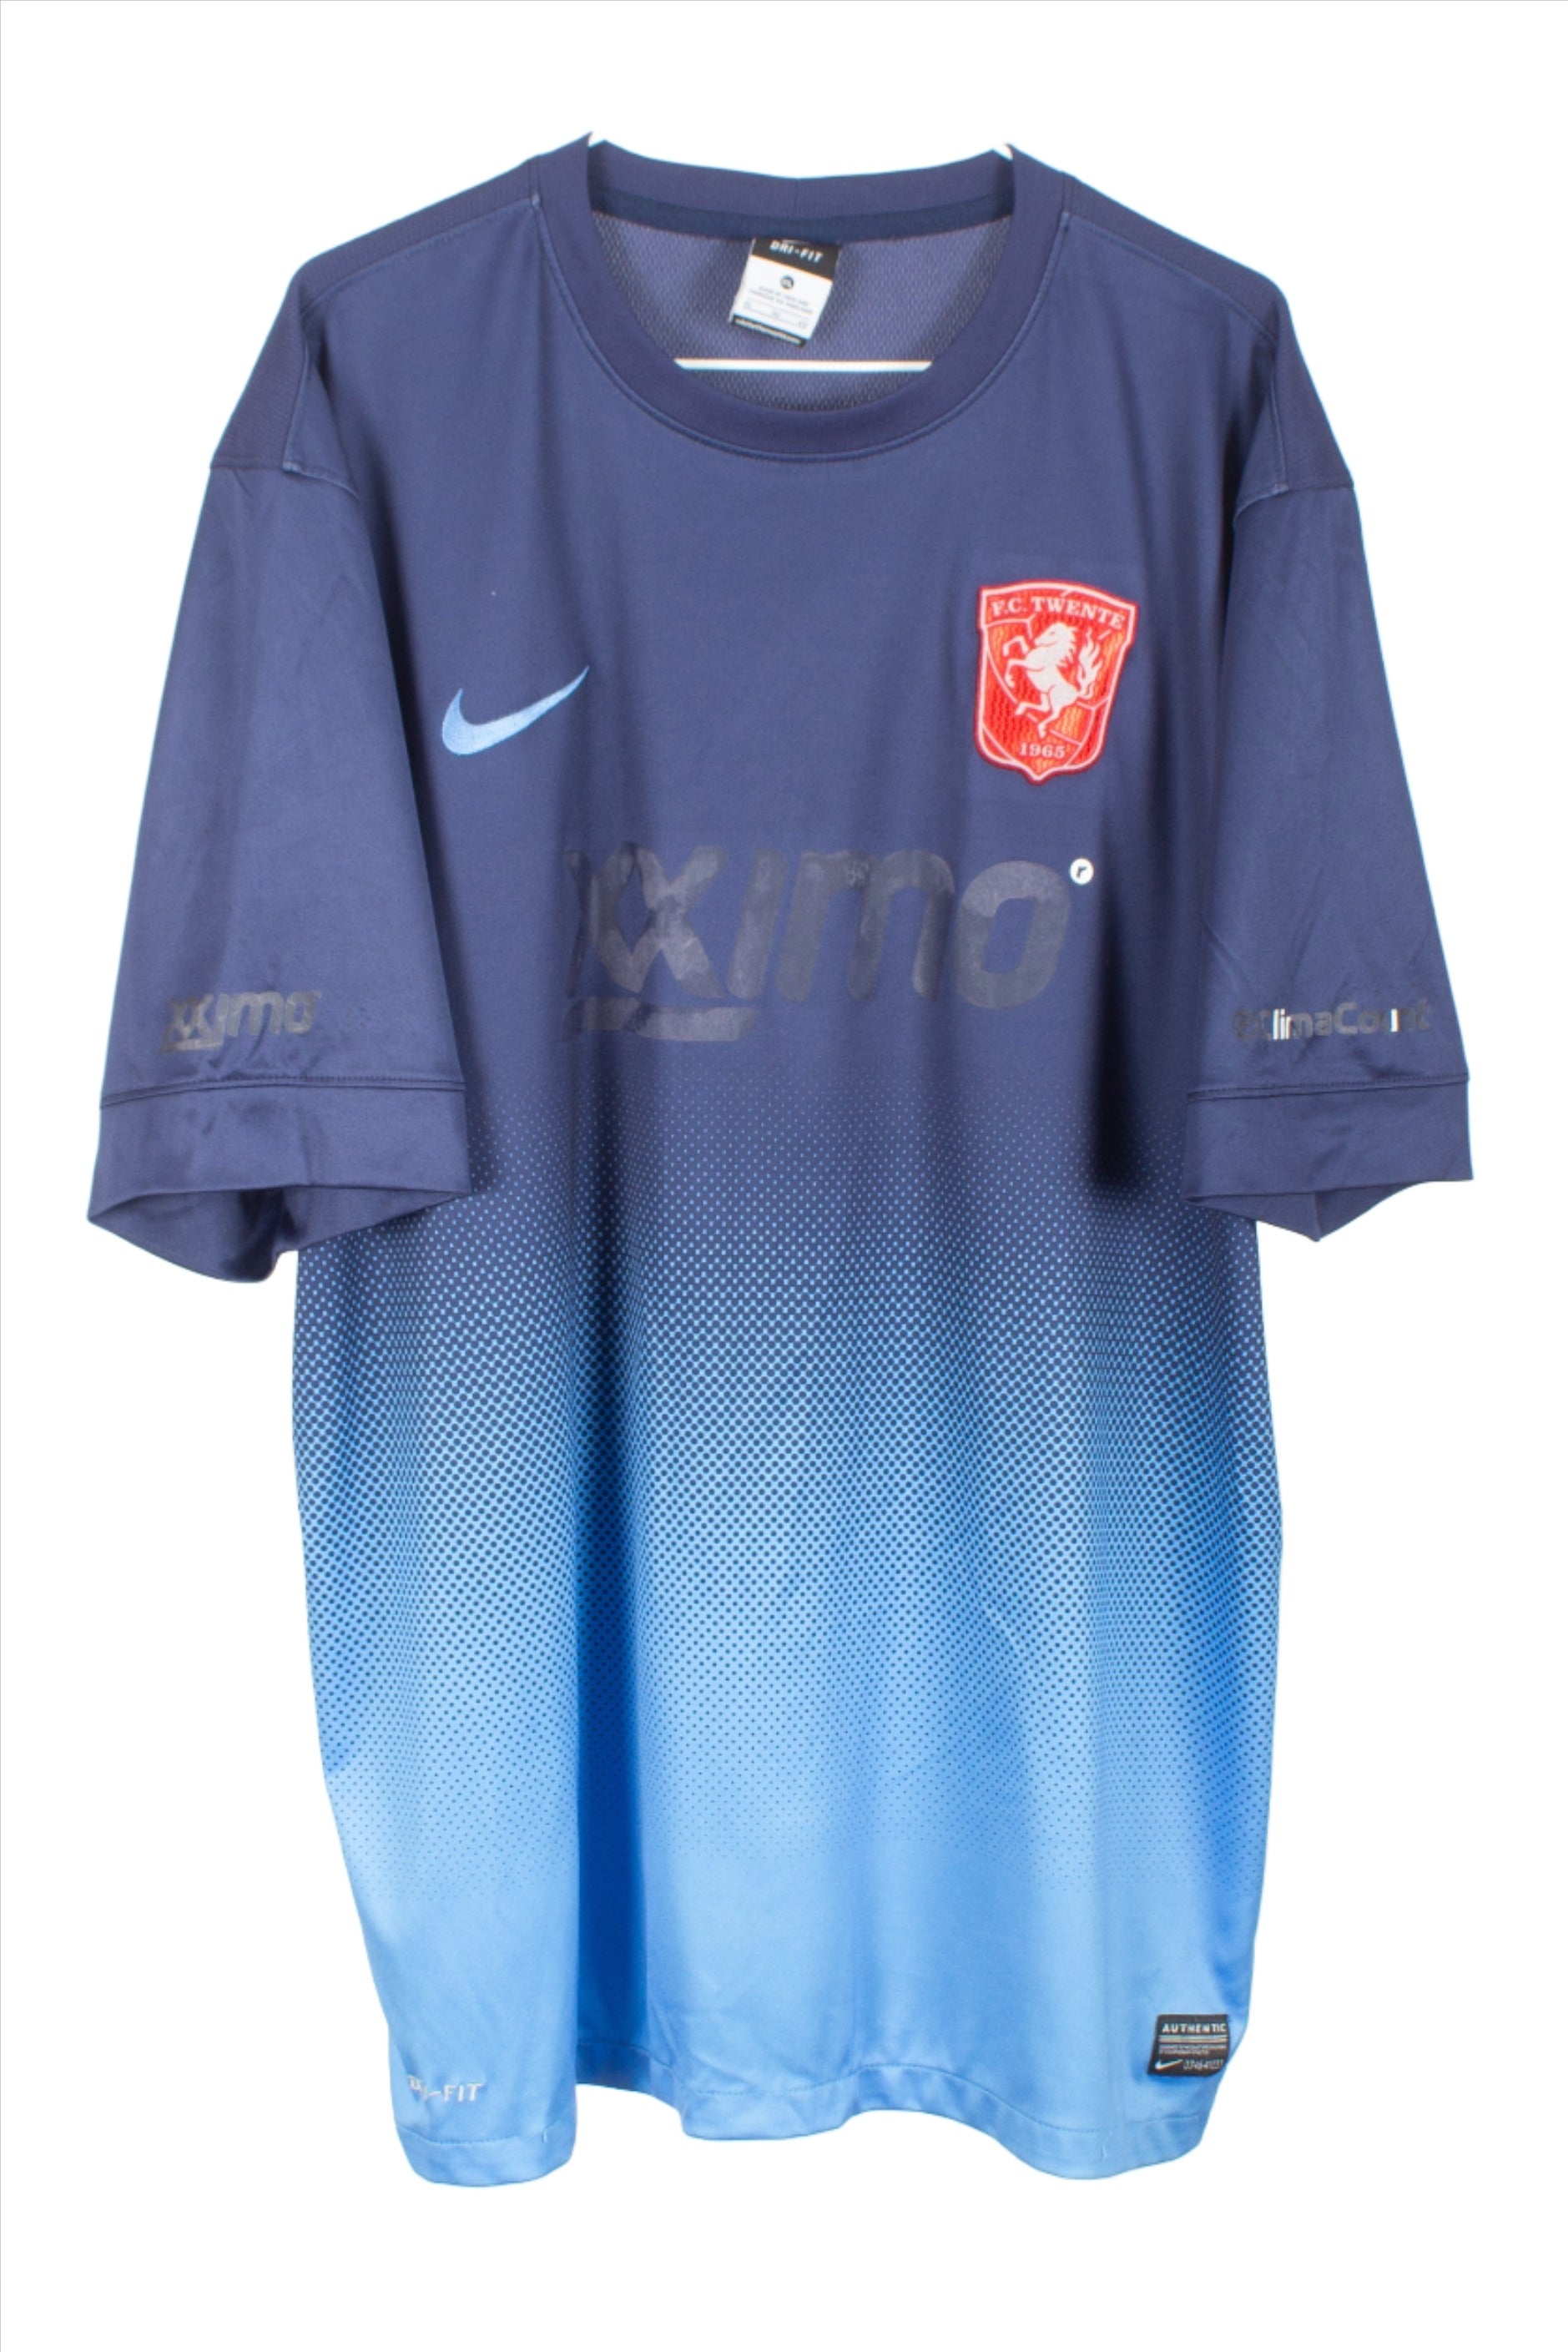 FC Twente 2013/14 Away Shirt (XL)